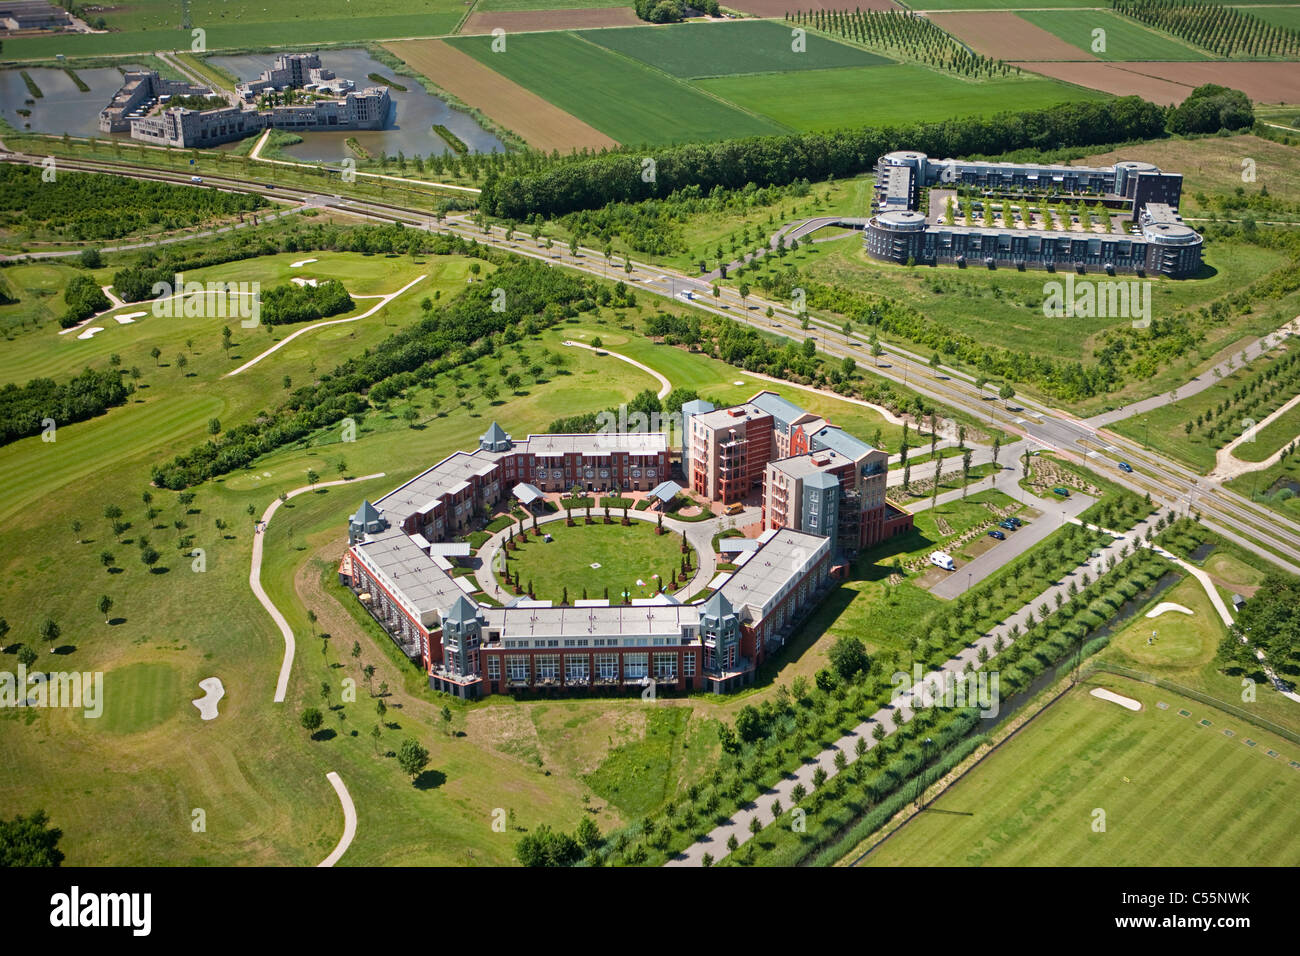 Les Pays-Bas, près de Den Bosch, immeubles d'habitation moderne appelé Haverleij châteaux. Vue aérienne. Banque D'Images